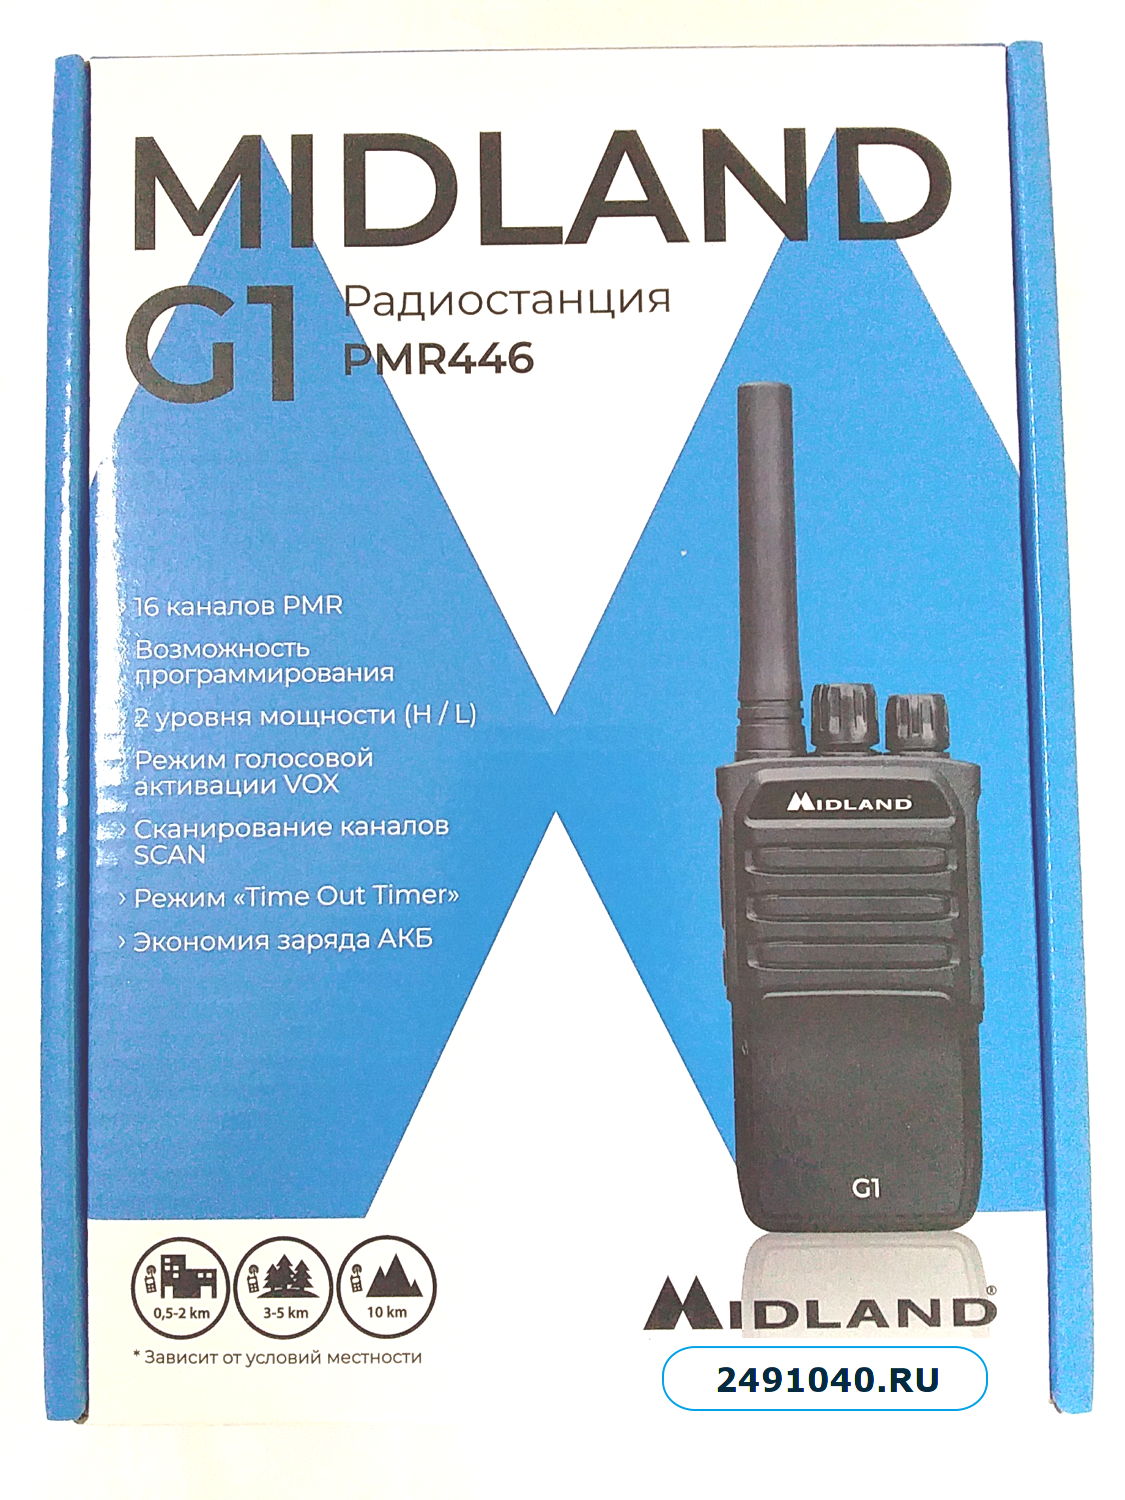 Midland G1